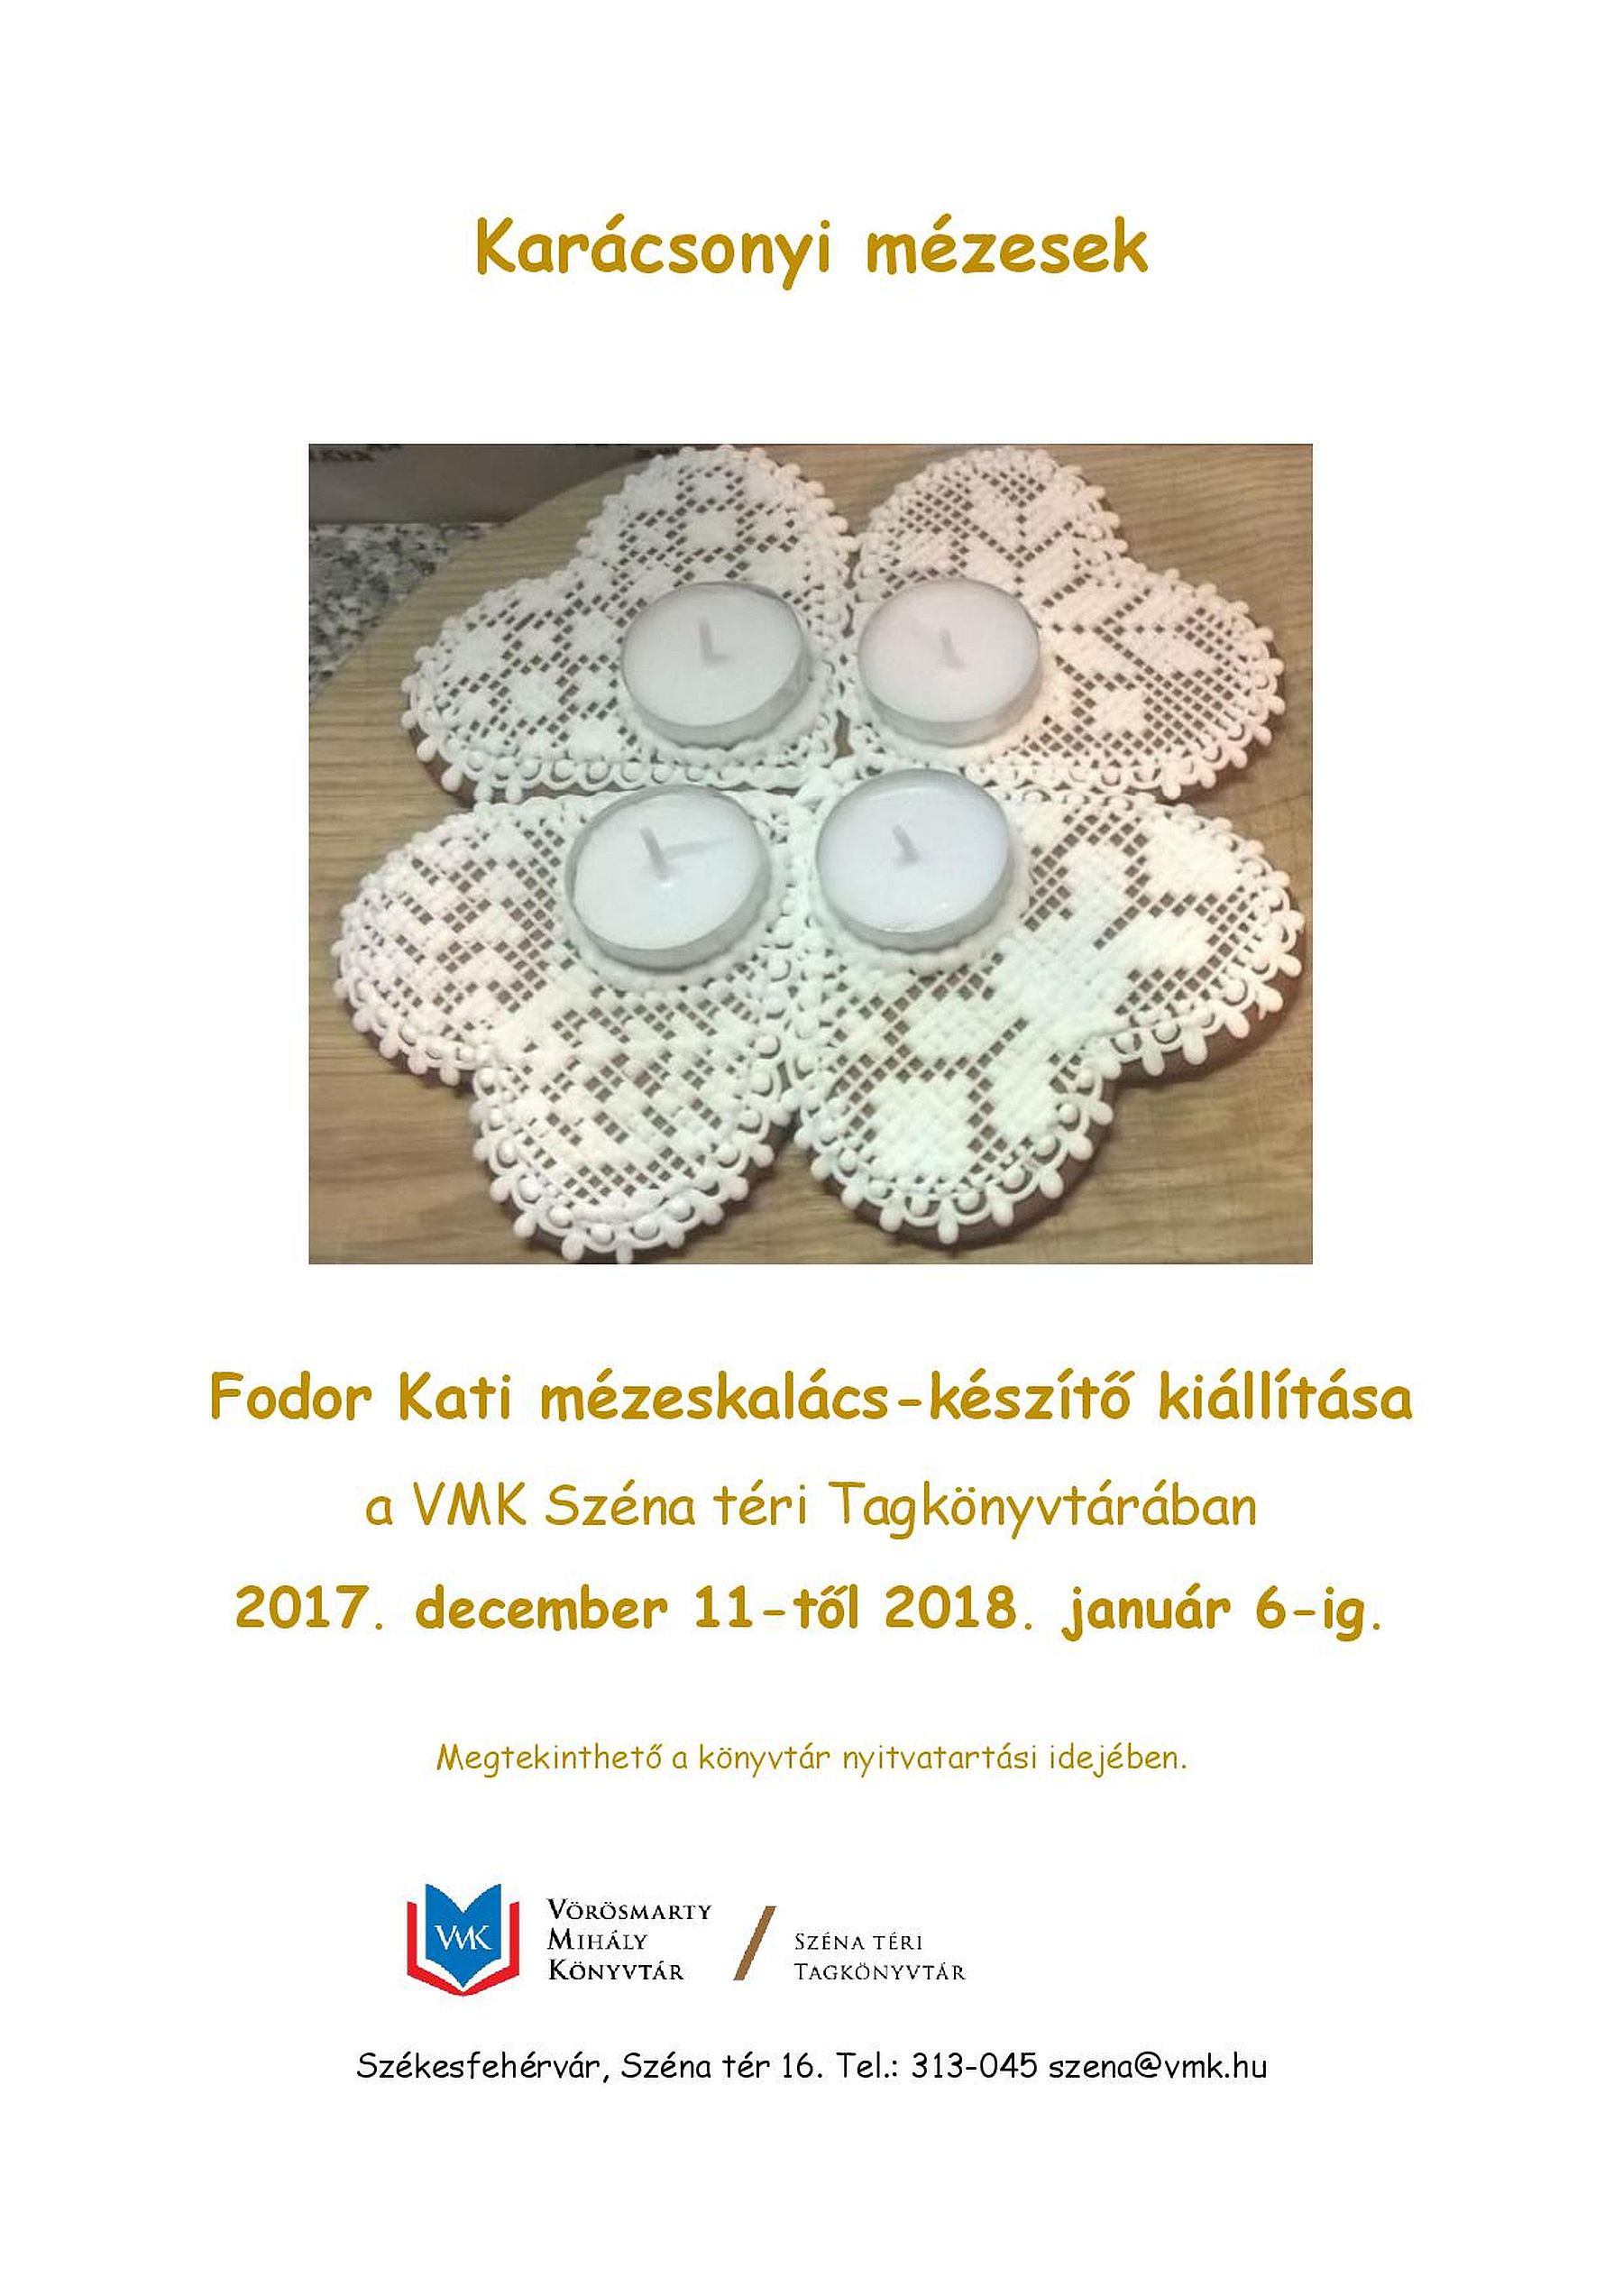 Fodor Kati mézeskalács-készítő kiállítása hétfőtől a Széna téri Könyvtárban